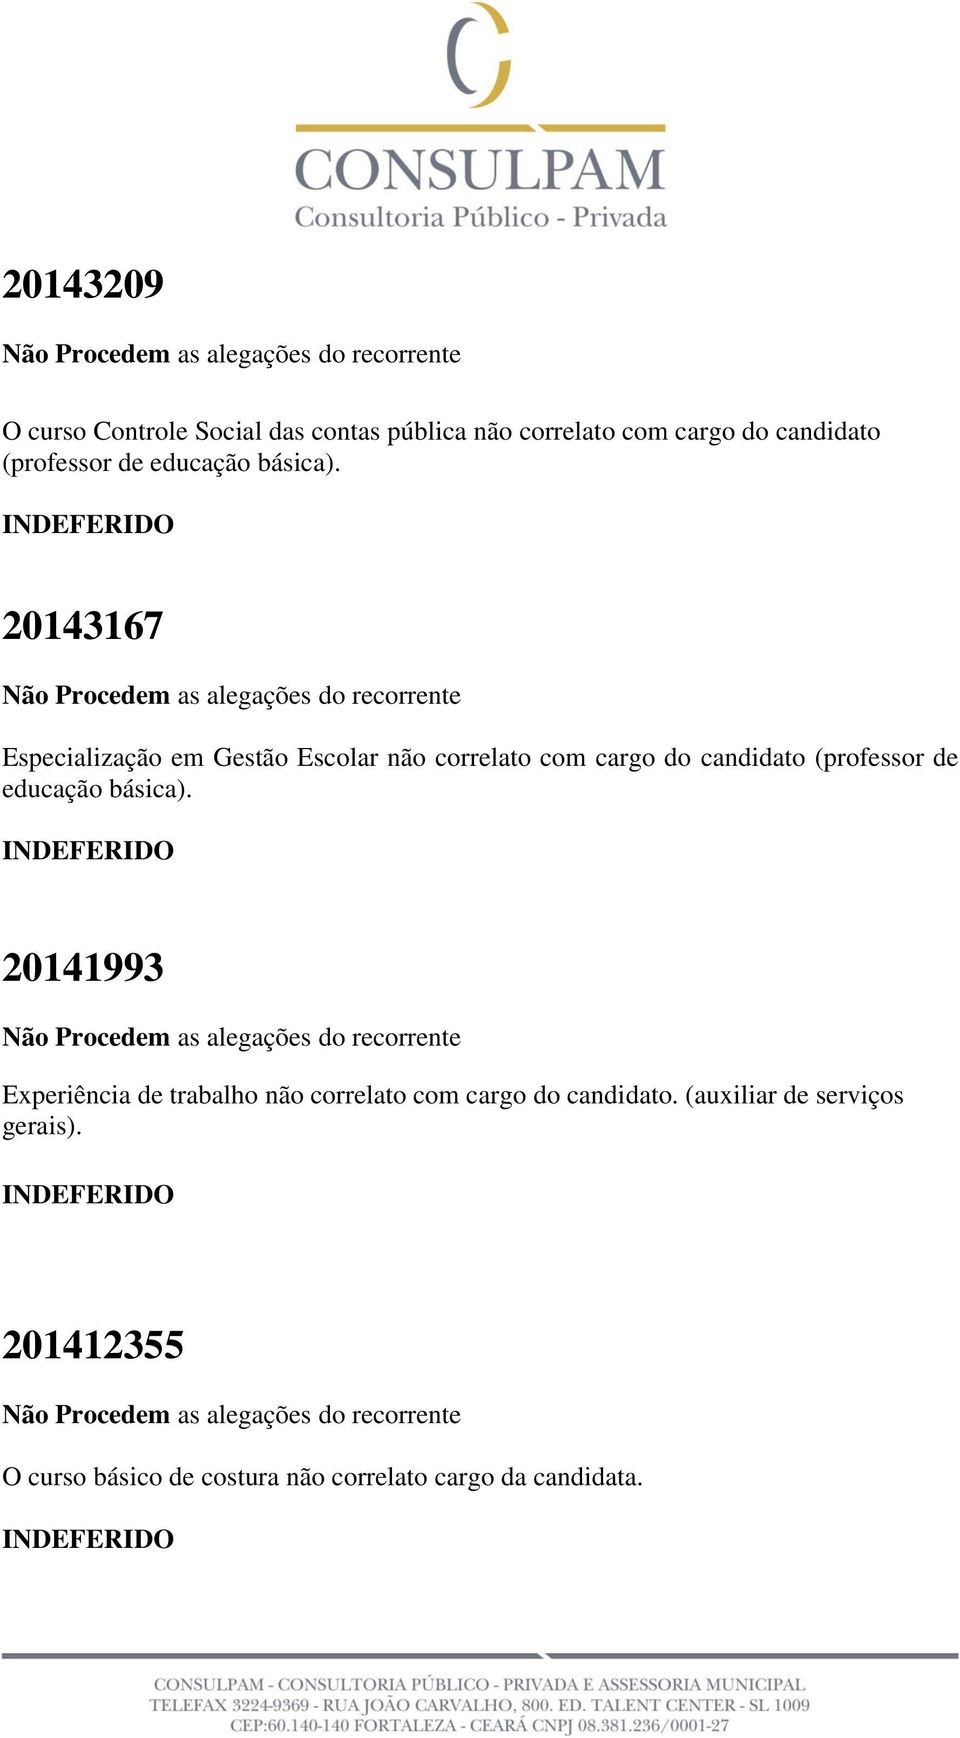 20143167 Especialização em Gestão Escolar não correlato com cargo do candidato (professor  20141993